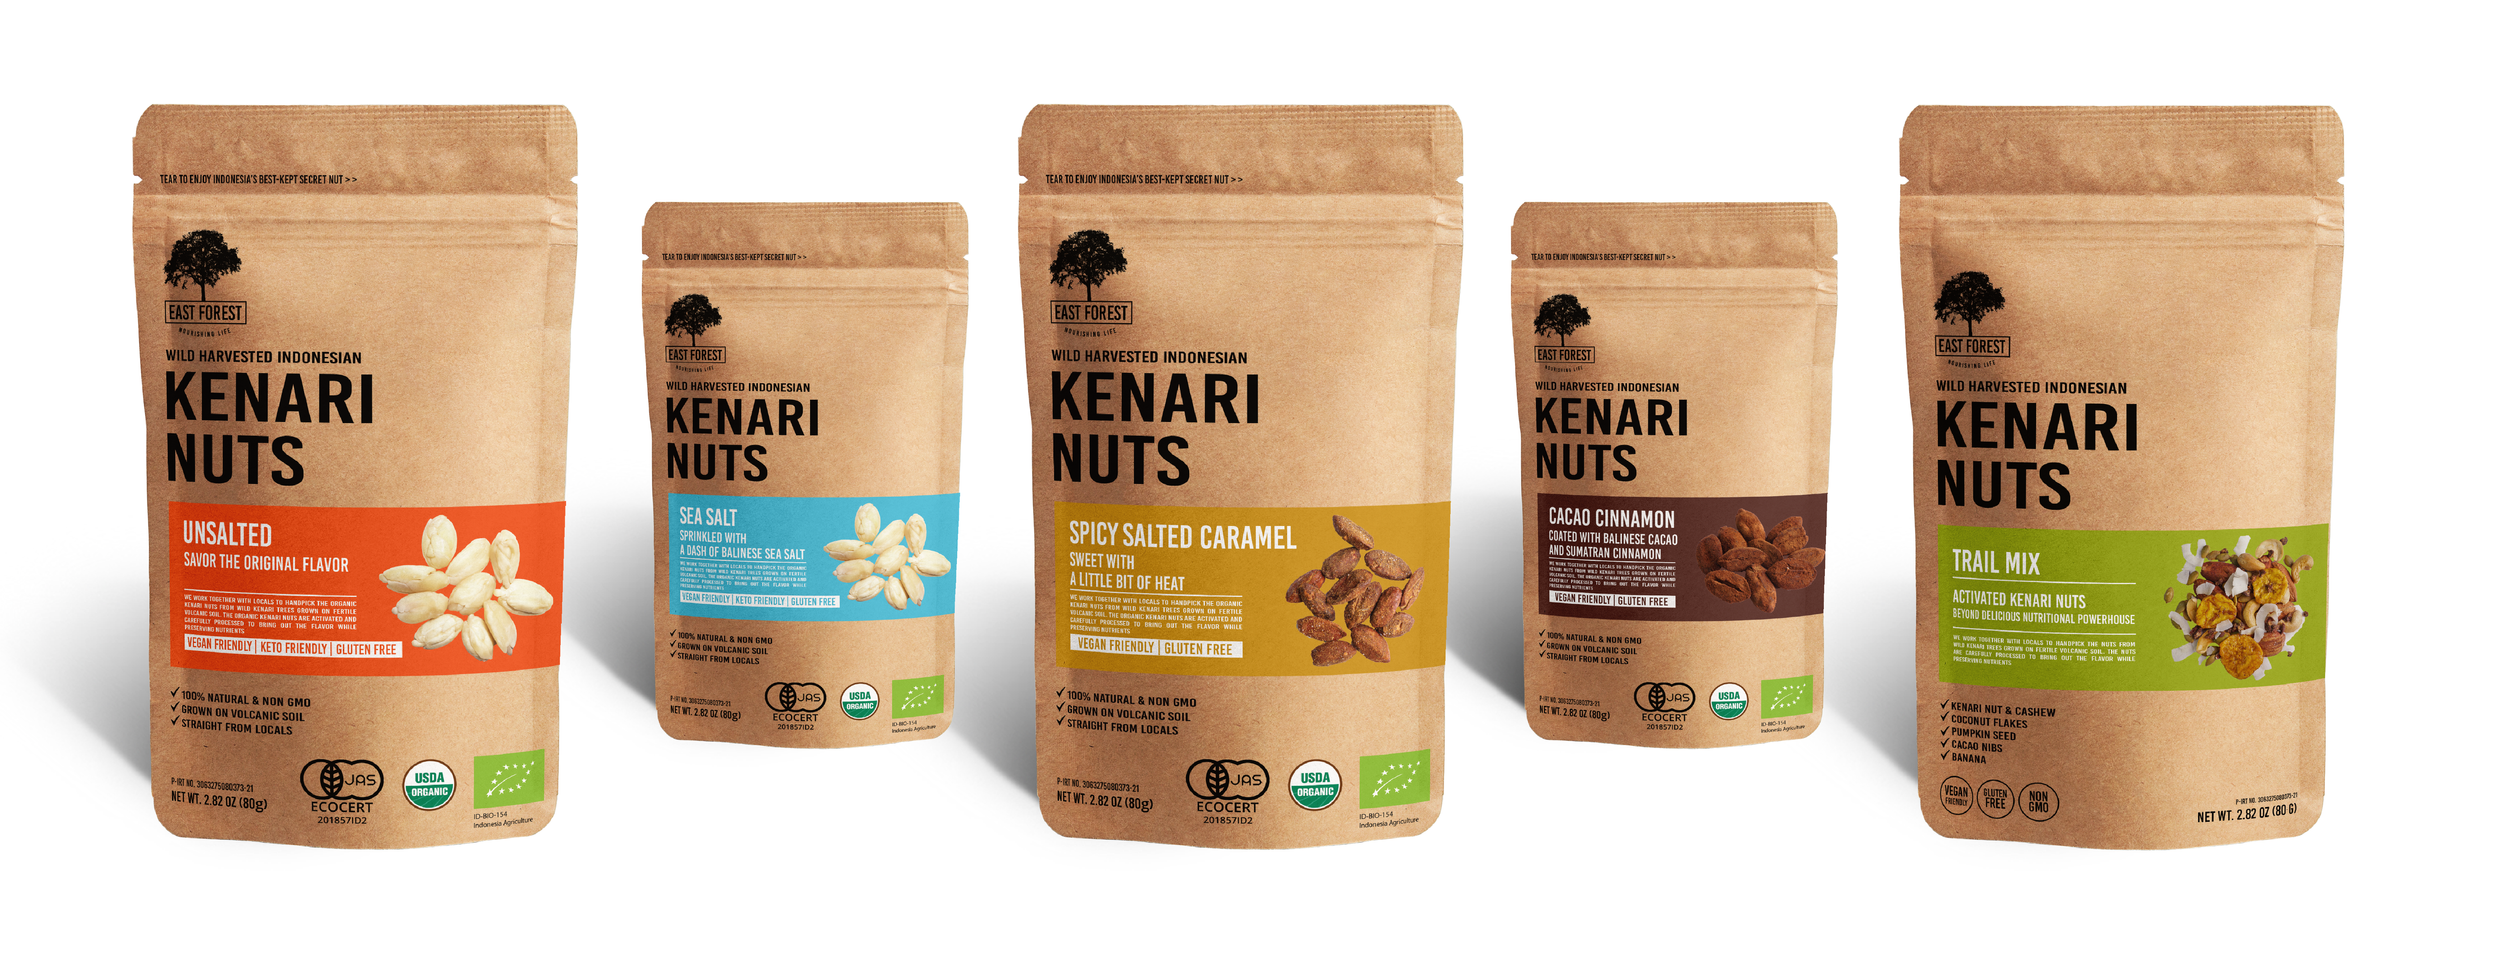 Organic Kenari Nuts East Forest Kenari Nuts Kawanasi Sehat Dasacatur Banner page 3-03.png